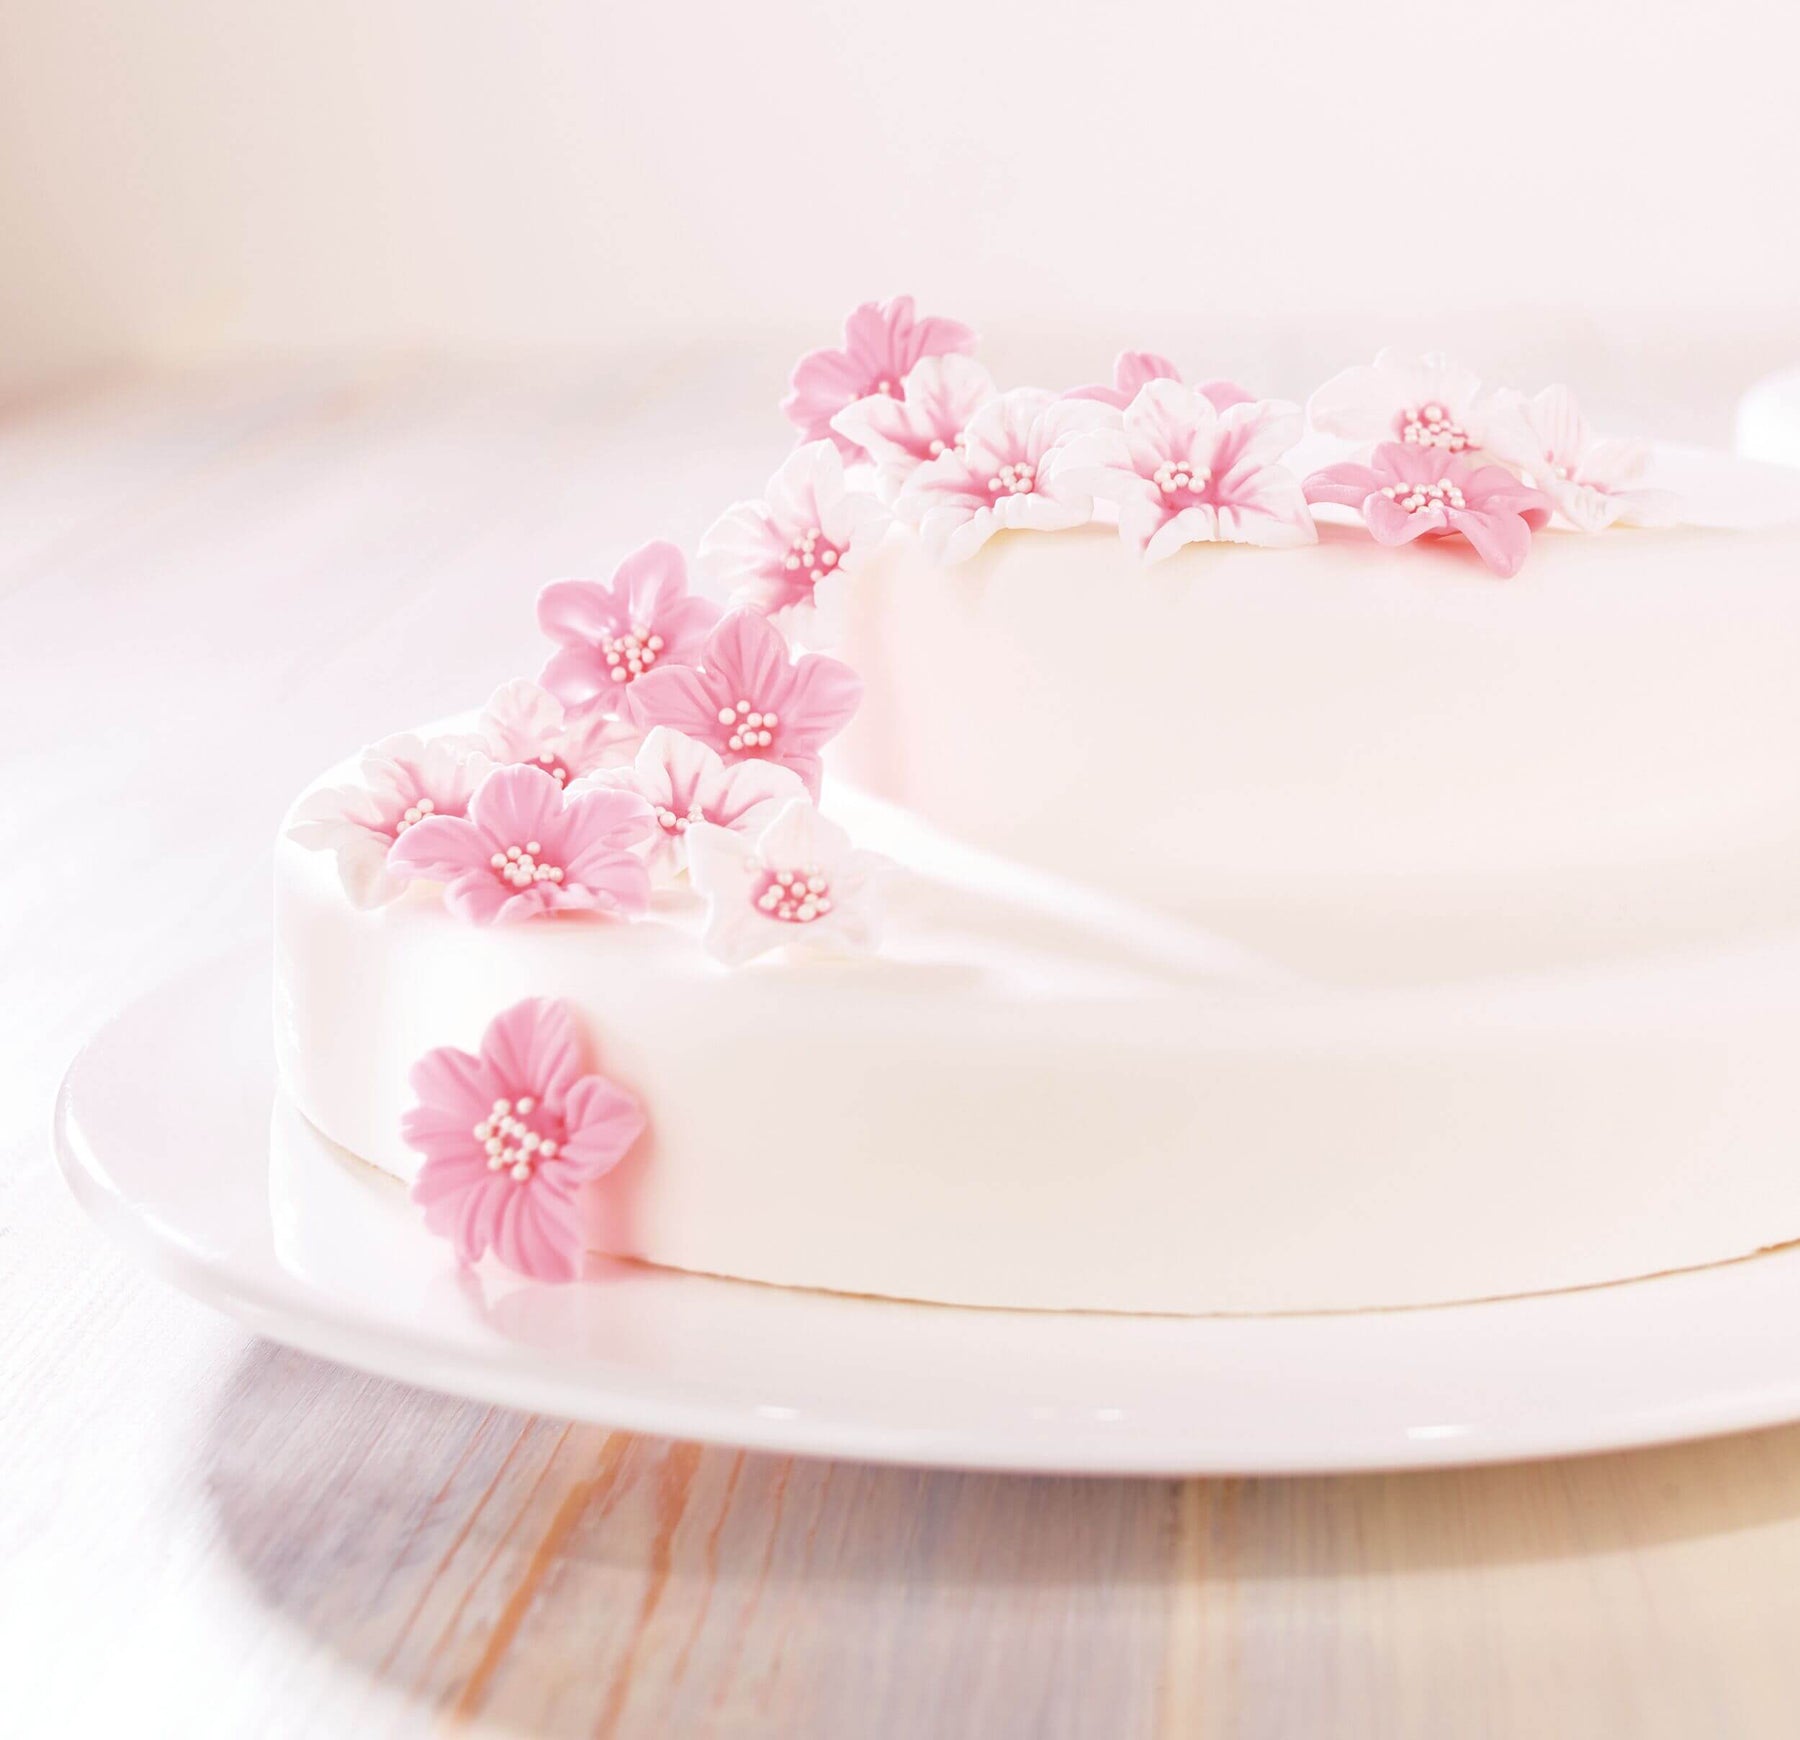 Rollfondant Weiß (250g), Fondantdecke Weiß für Kuchen, Torten, Cupcake